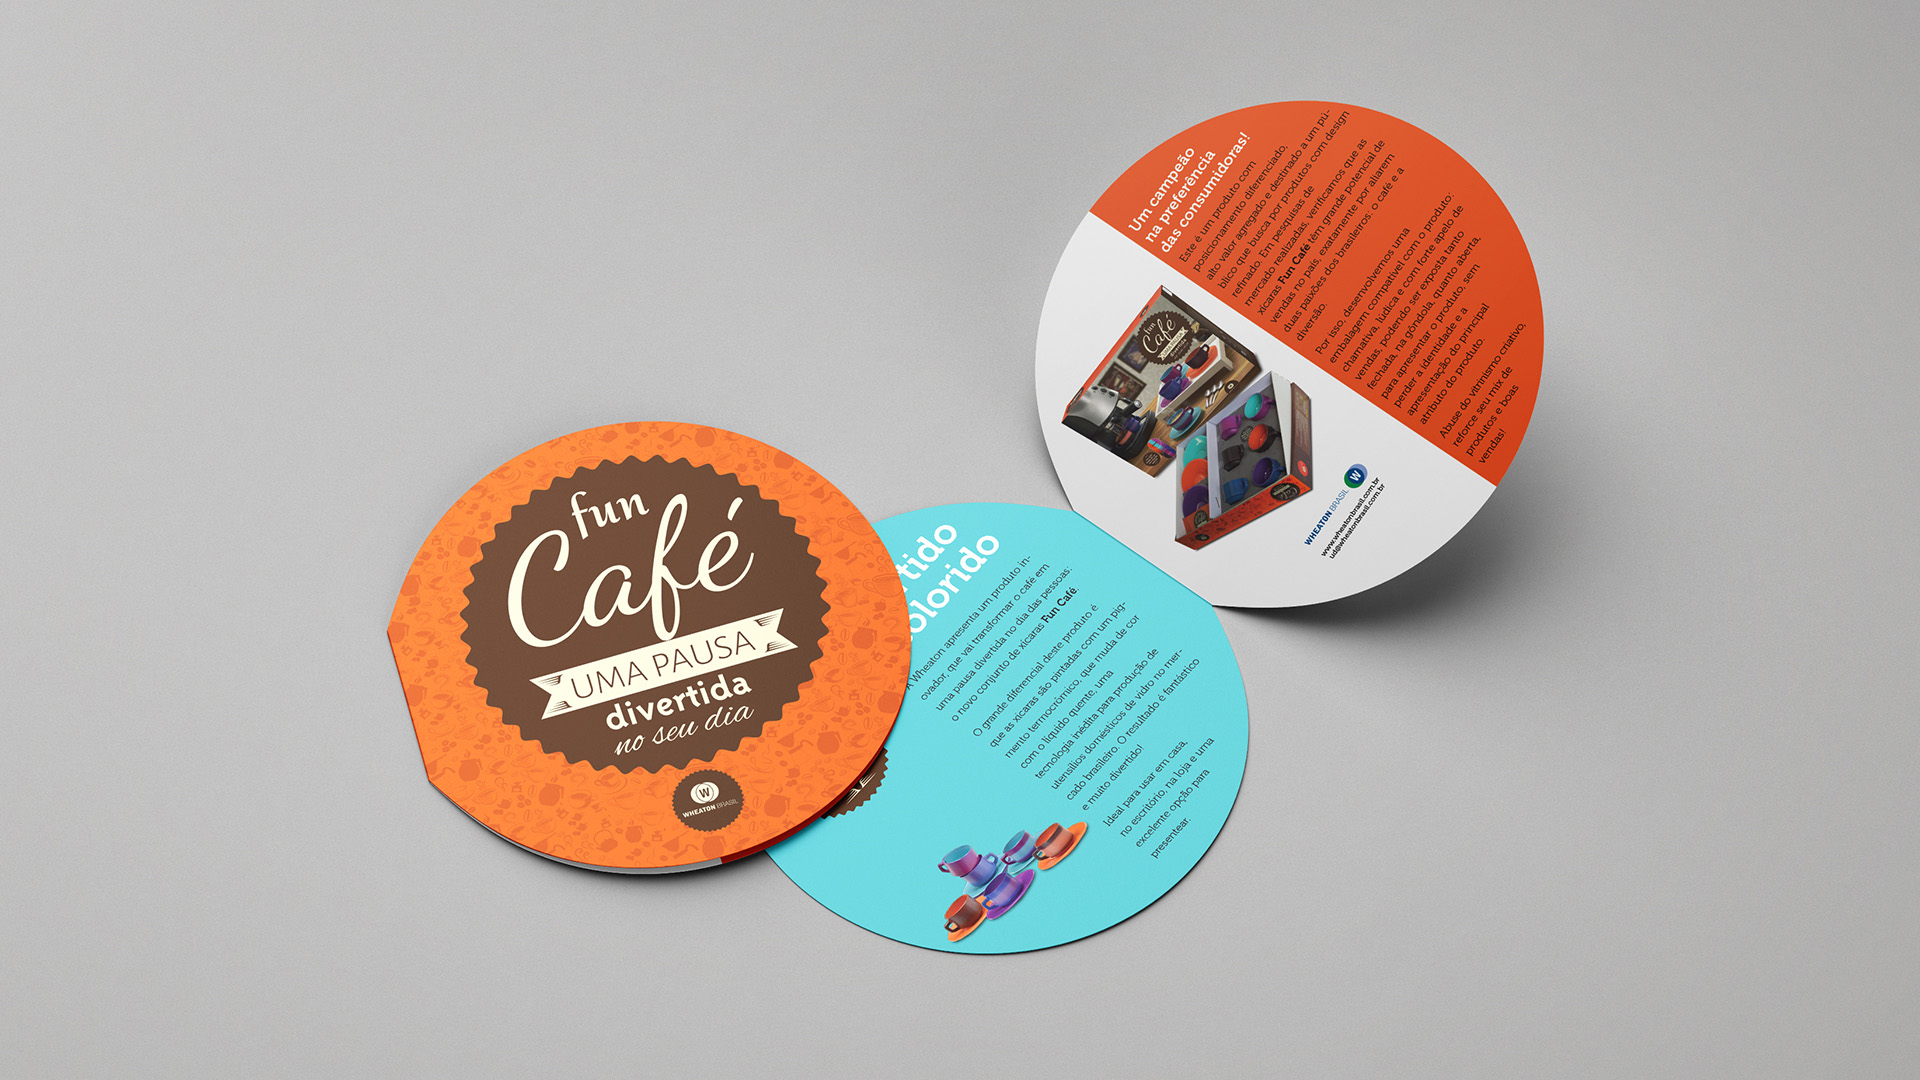 Imagem de folheto promocional redondo com uma dobra. Material de apoio às vendas da linha Fun Café Wheaton.